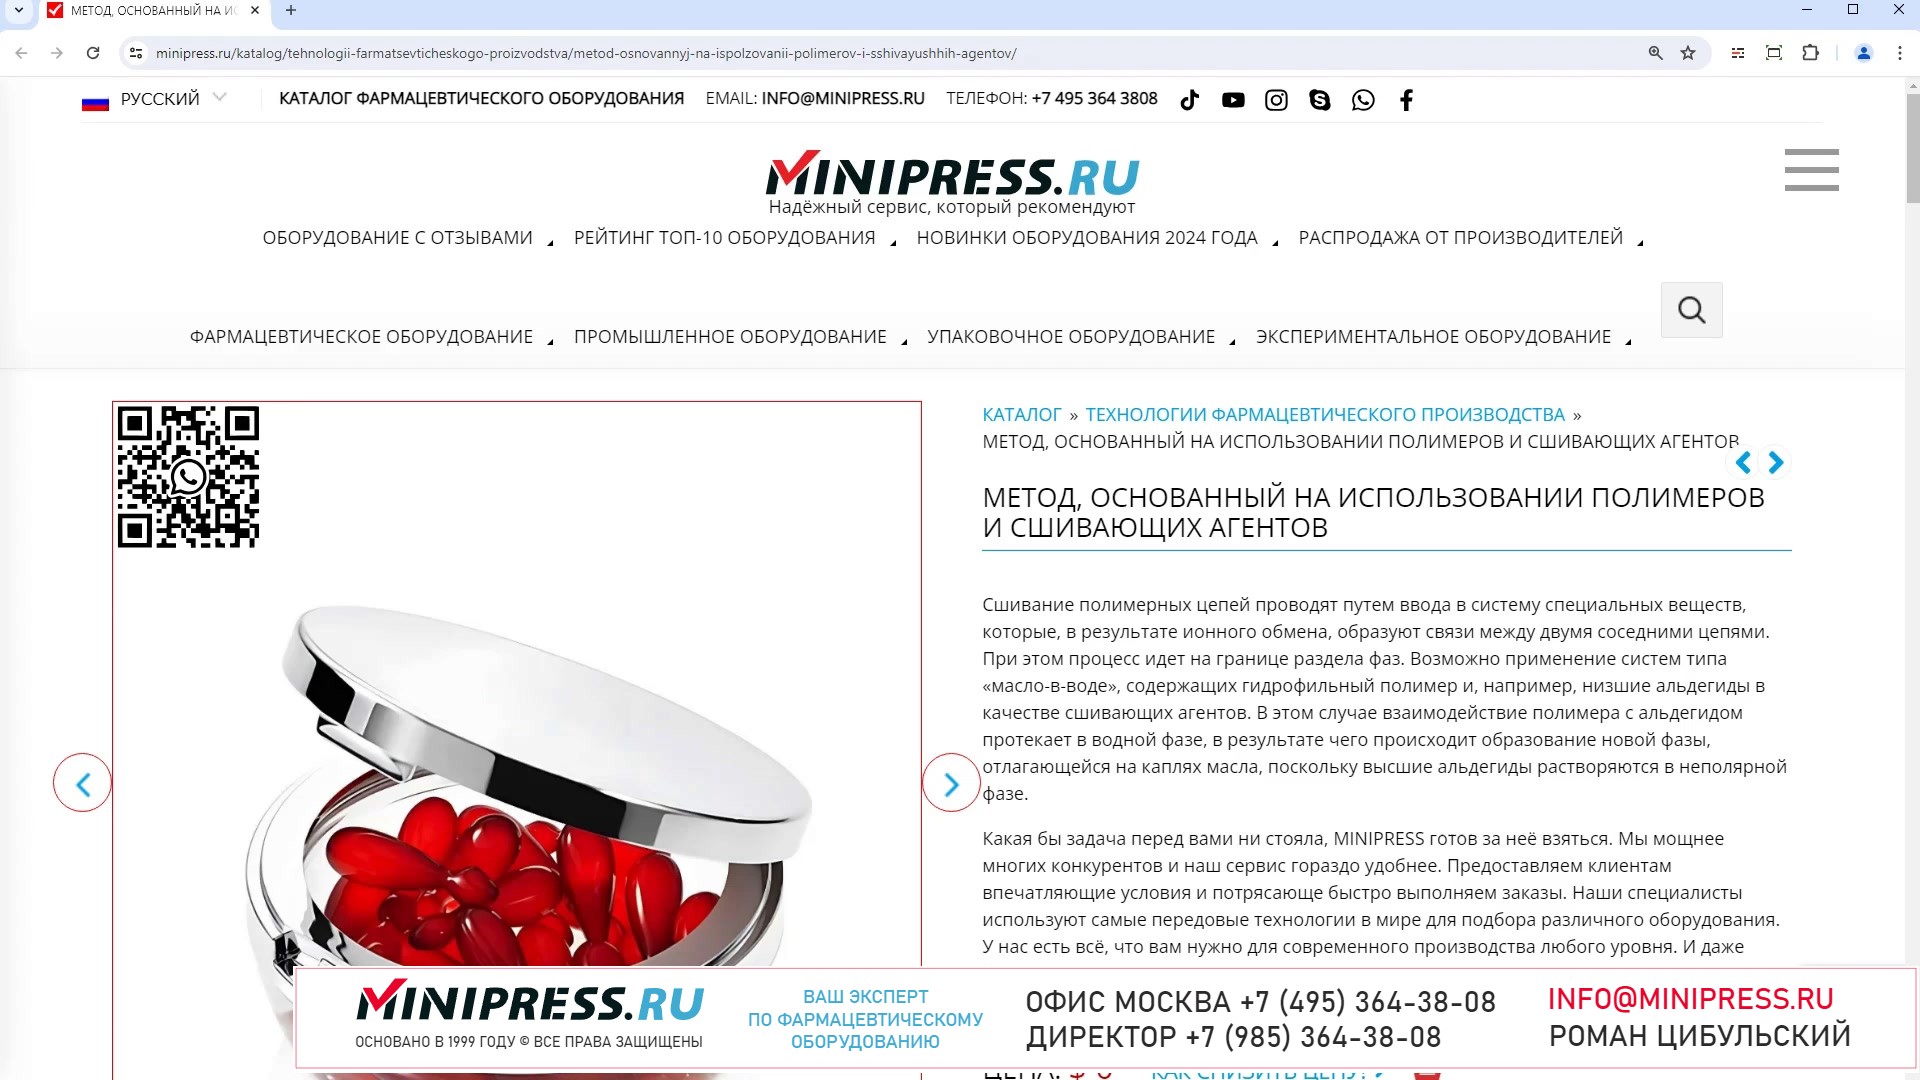 Minipress.ru Метод, основанный на использовании полимеров и сшивающих агентов